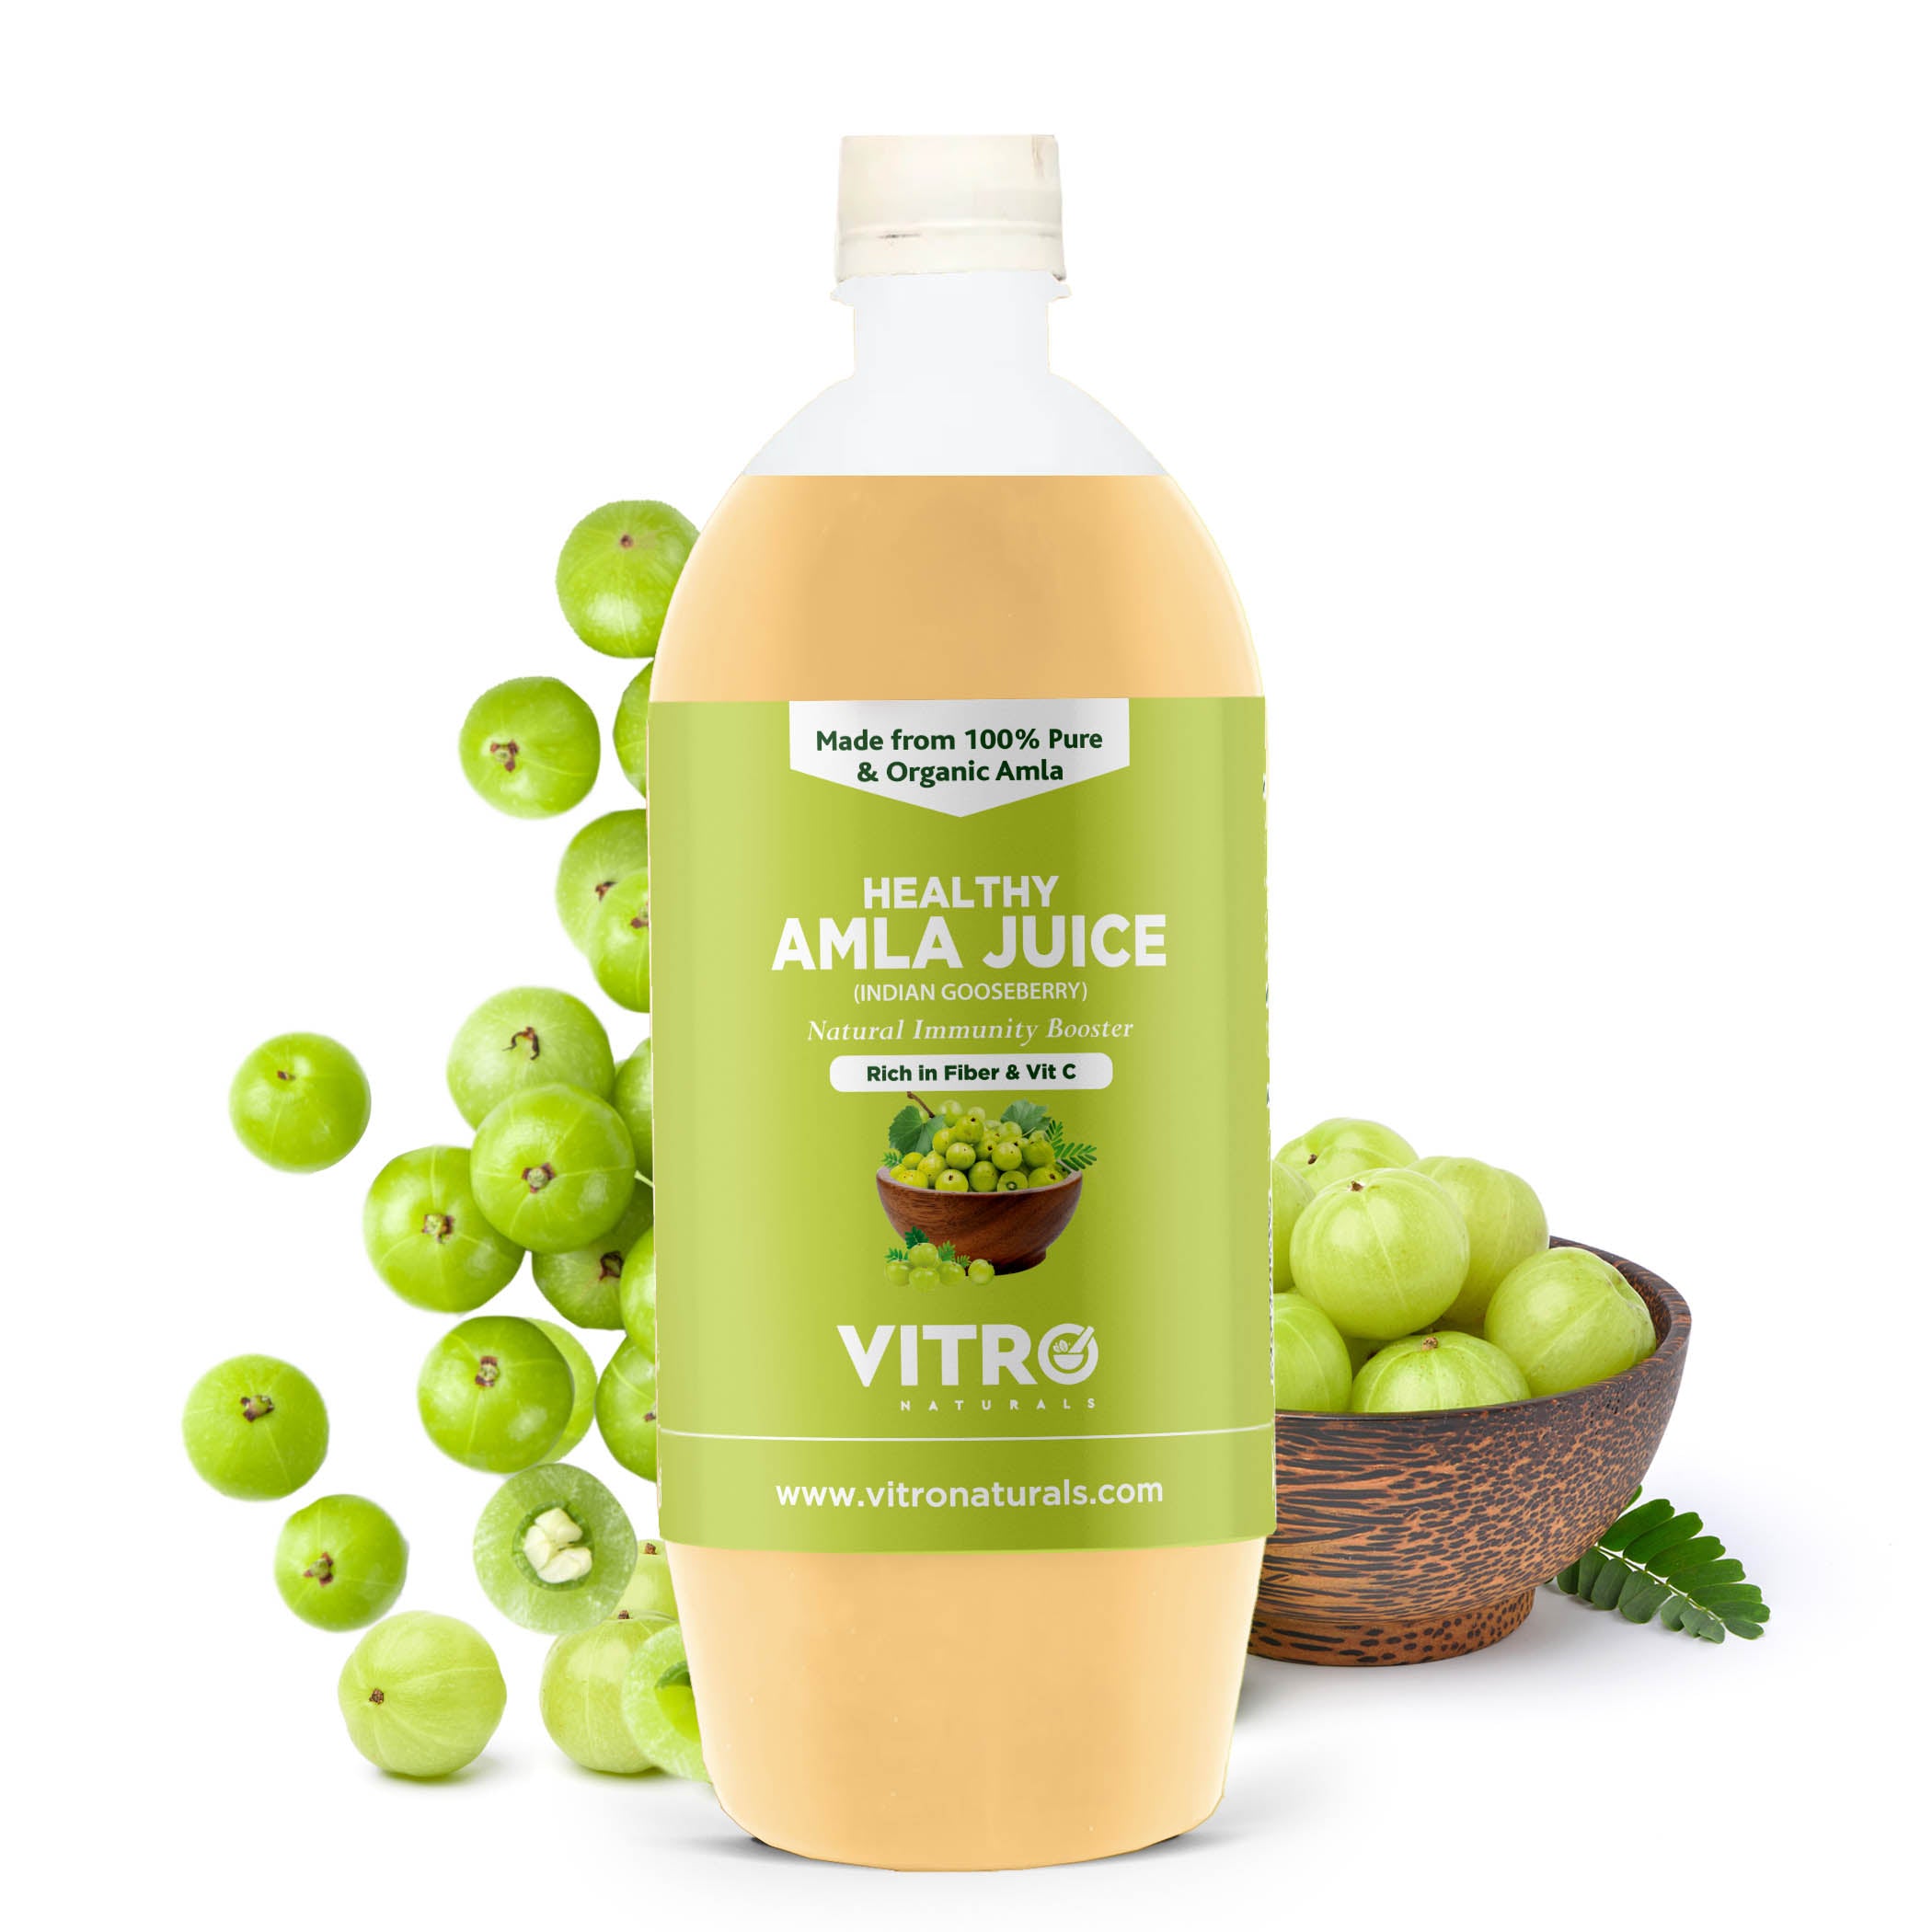 Healthy Amla and aloe Vera juice